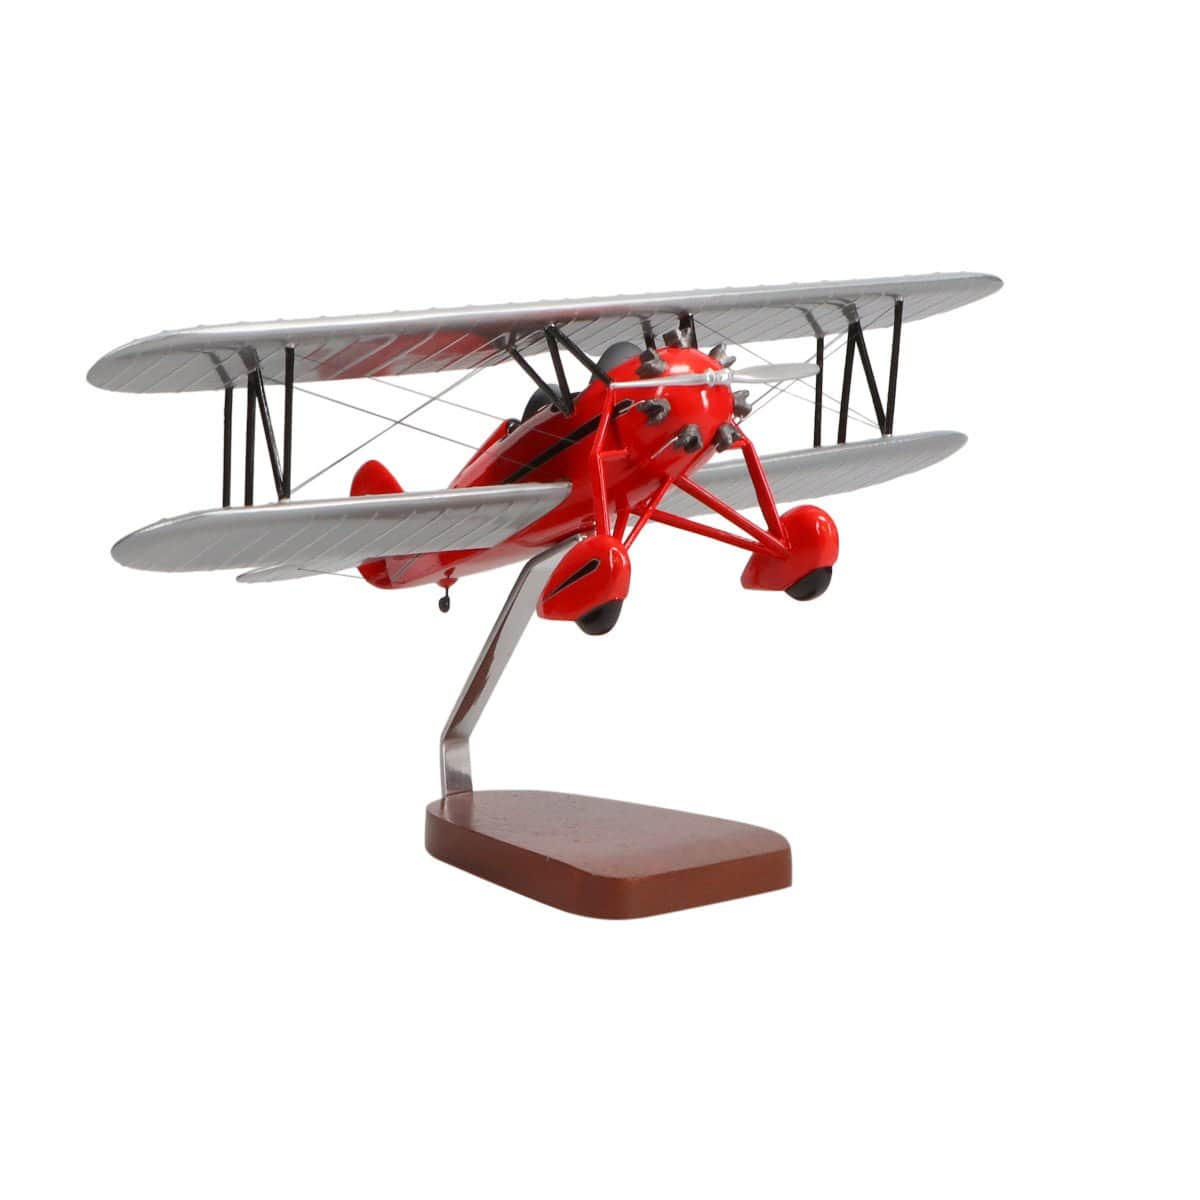 Waco Aircraft Company RNF (Red) Large Mahogany Model